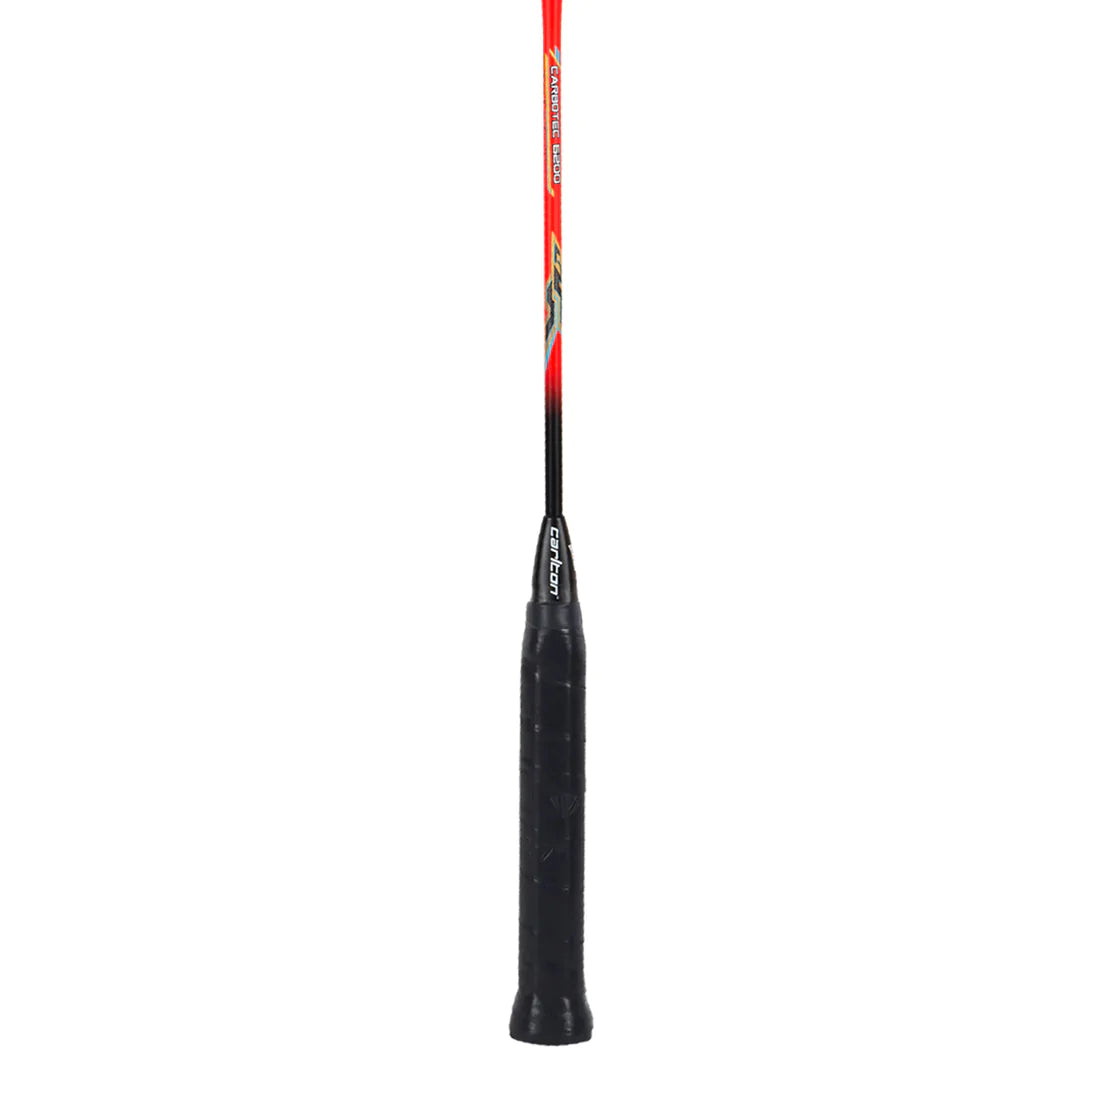 Carlton Carbotec 6200 Strung Badminton Racket - Red/Black